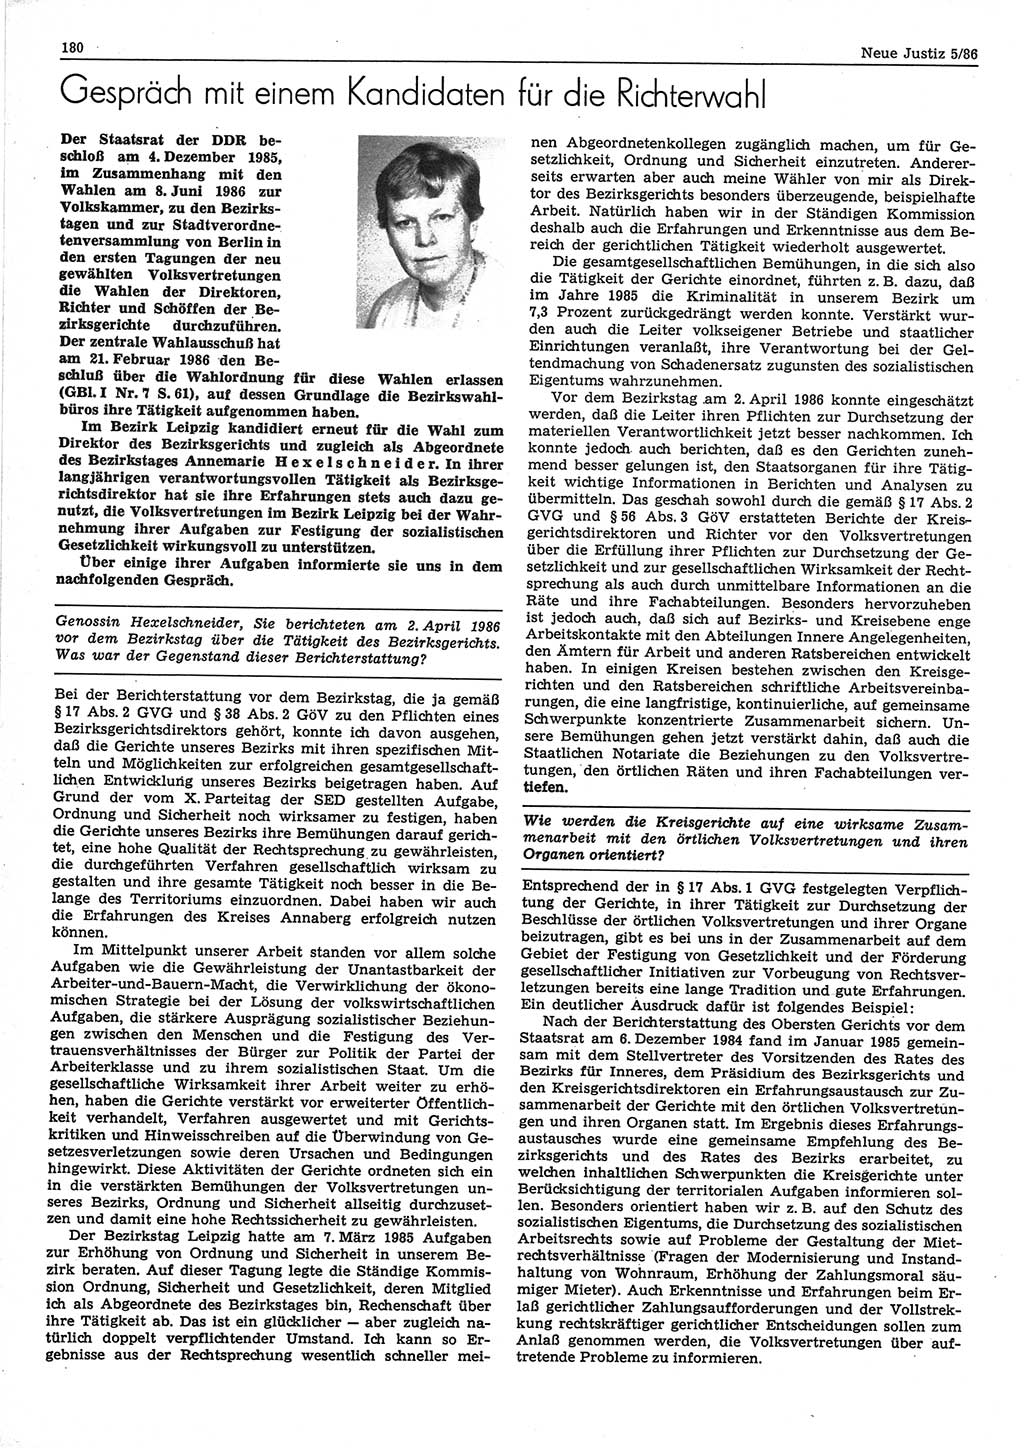 Neue Justiz (NJ), Zeitschrift für sozialistisches Recht und Gesetzlichkeit [Deutsche Demokratische Republik (DDR)], 40. Jahrgang 1986, Seite 180 (NJ DDR 1986, S. 180)